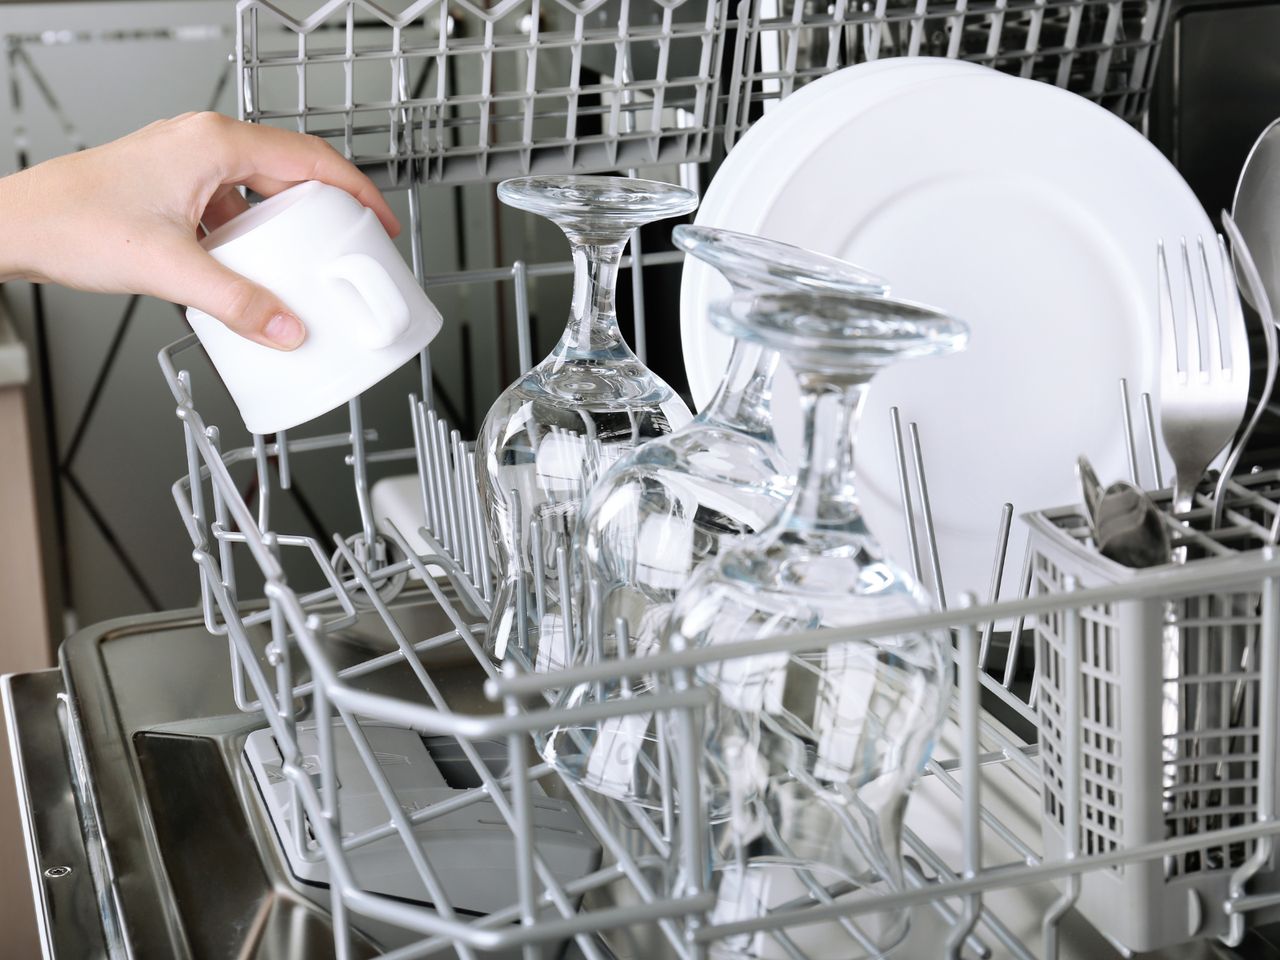 W zmywarce umyjesz nie tylko naczynia